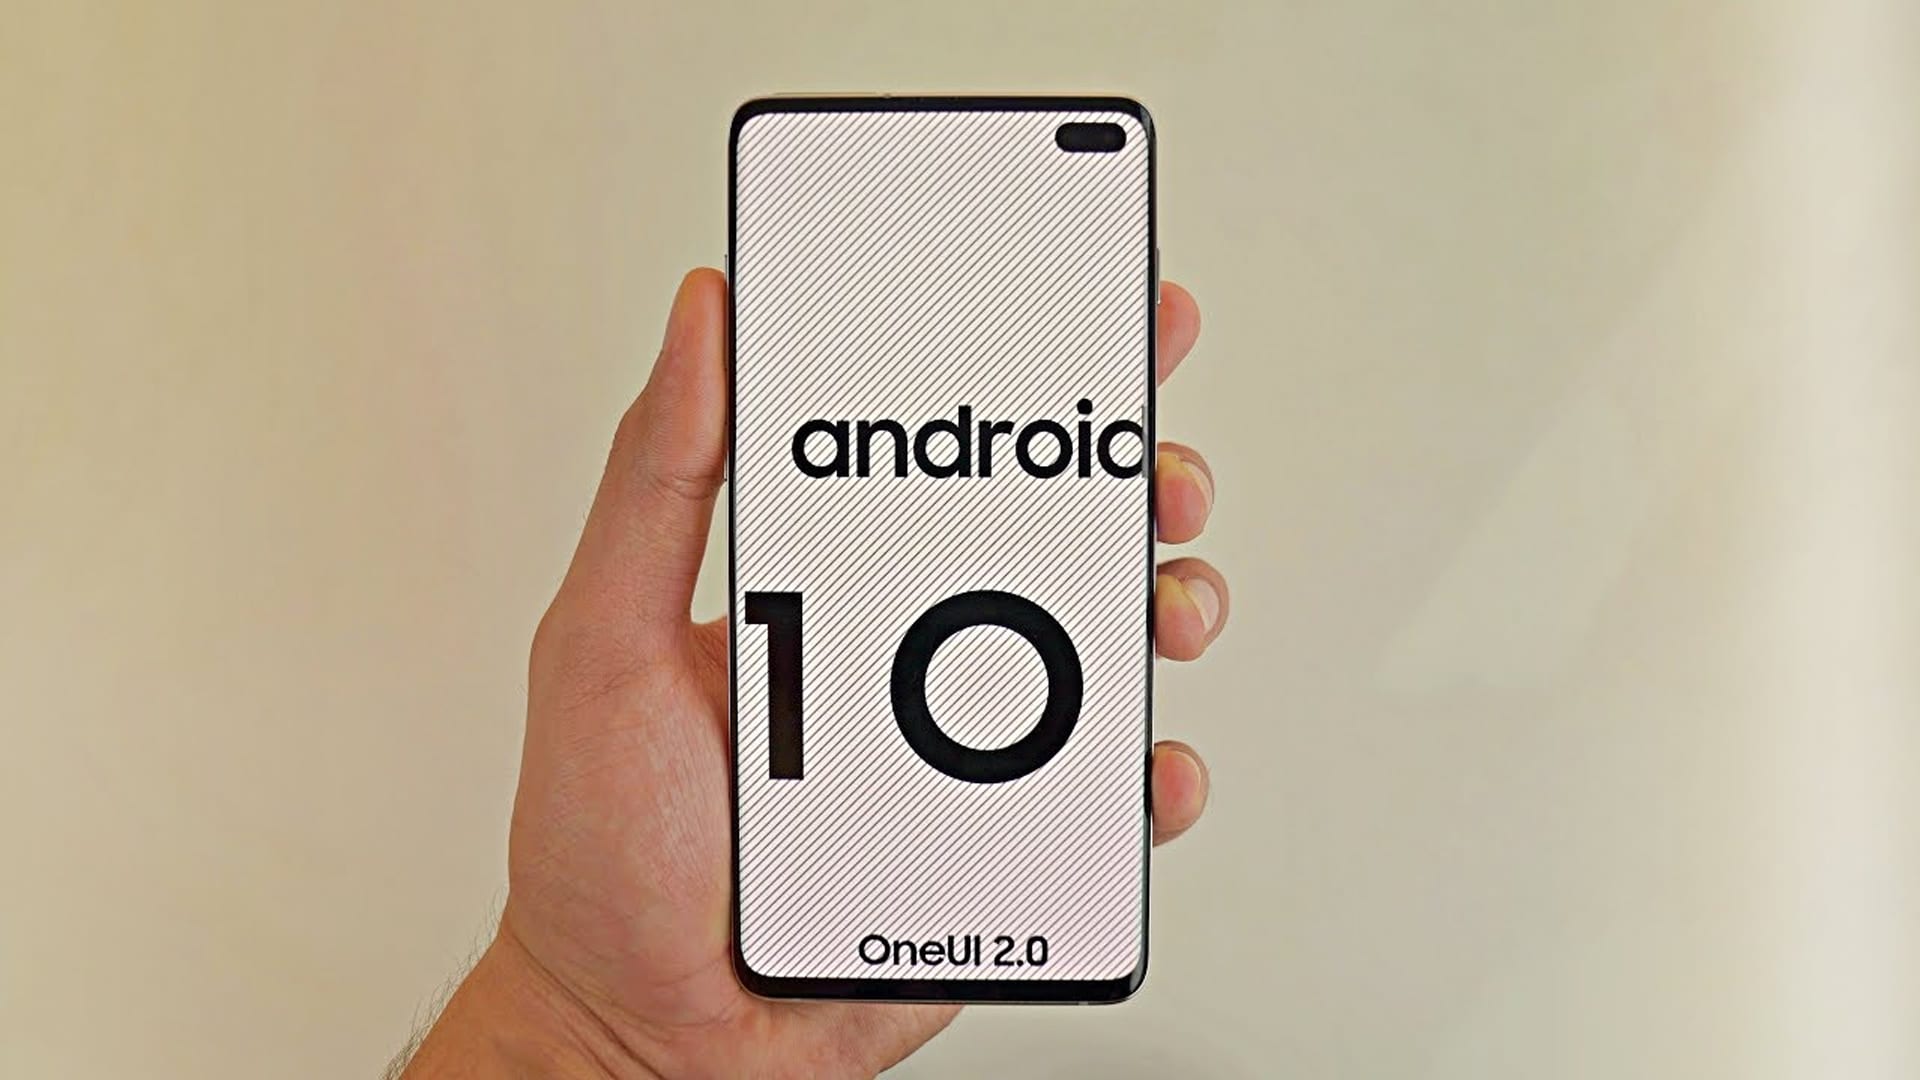 سامسونج ستبدأ بإختبار تحديث Android 10 بالواجهة الجديدة One UI 2.0 لسلسلة هواتف Galaxy S10 Series قريبًا